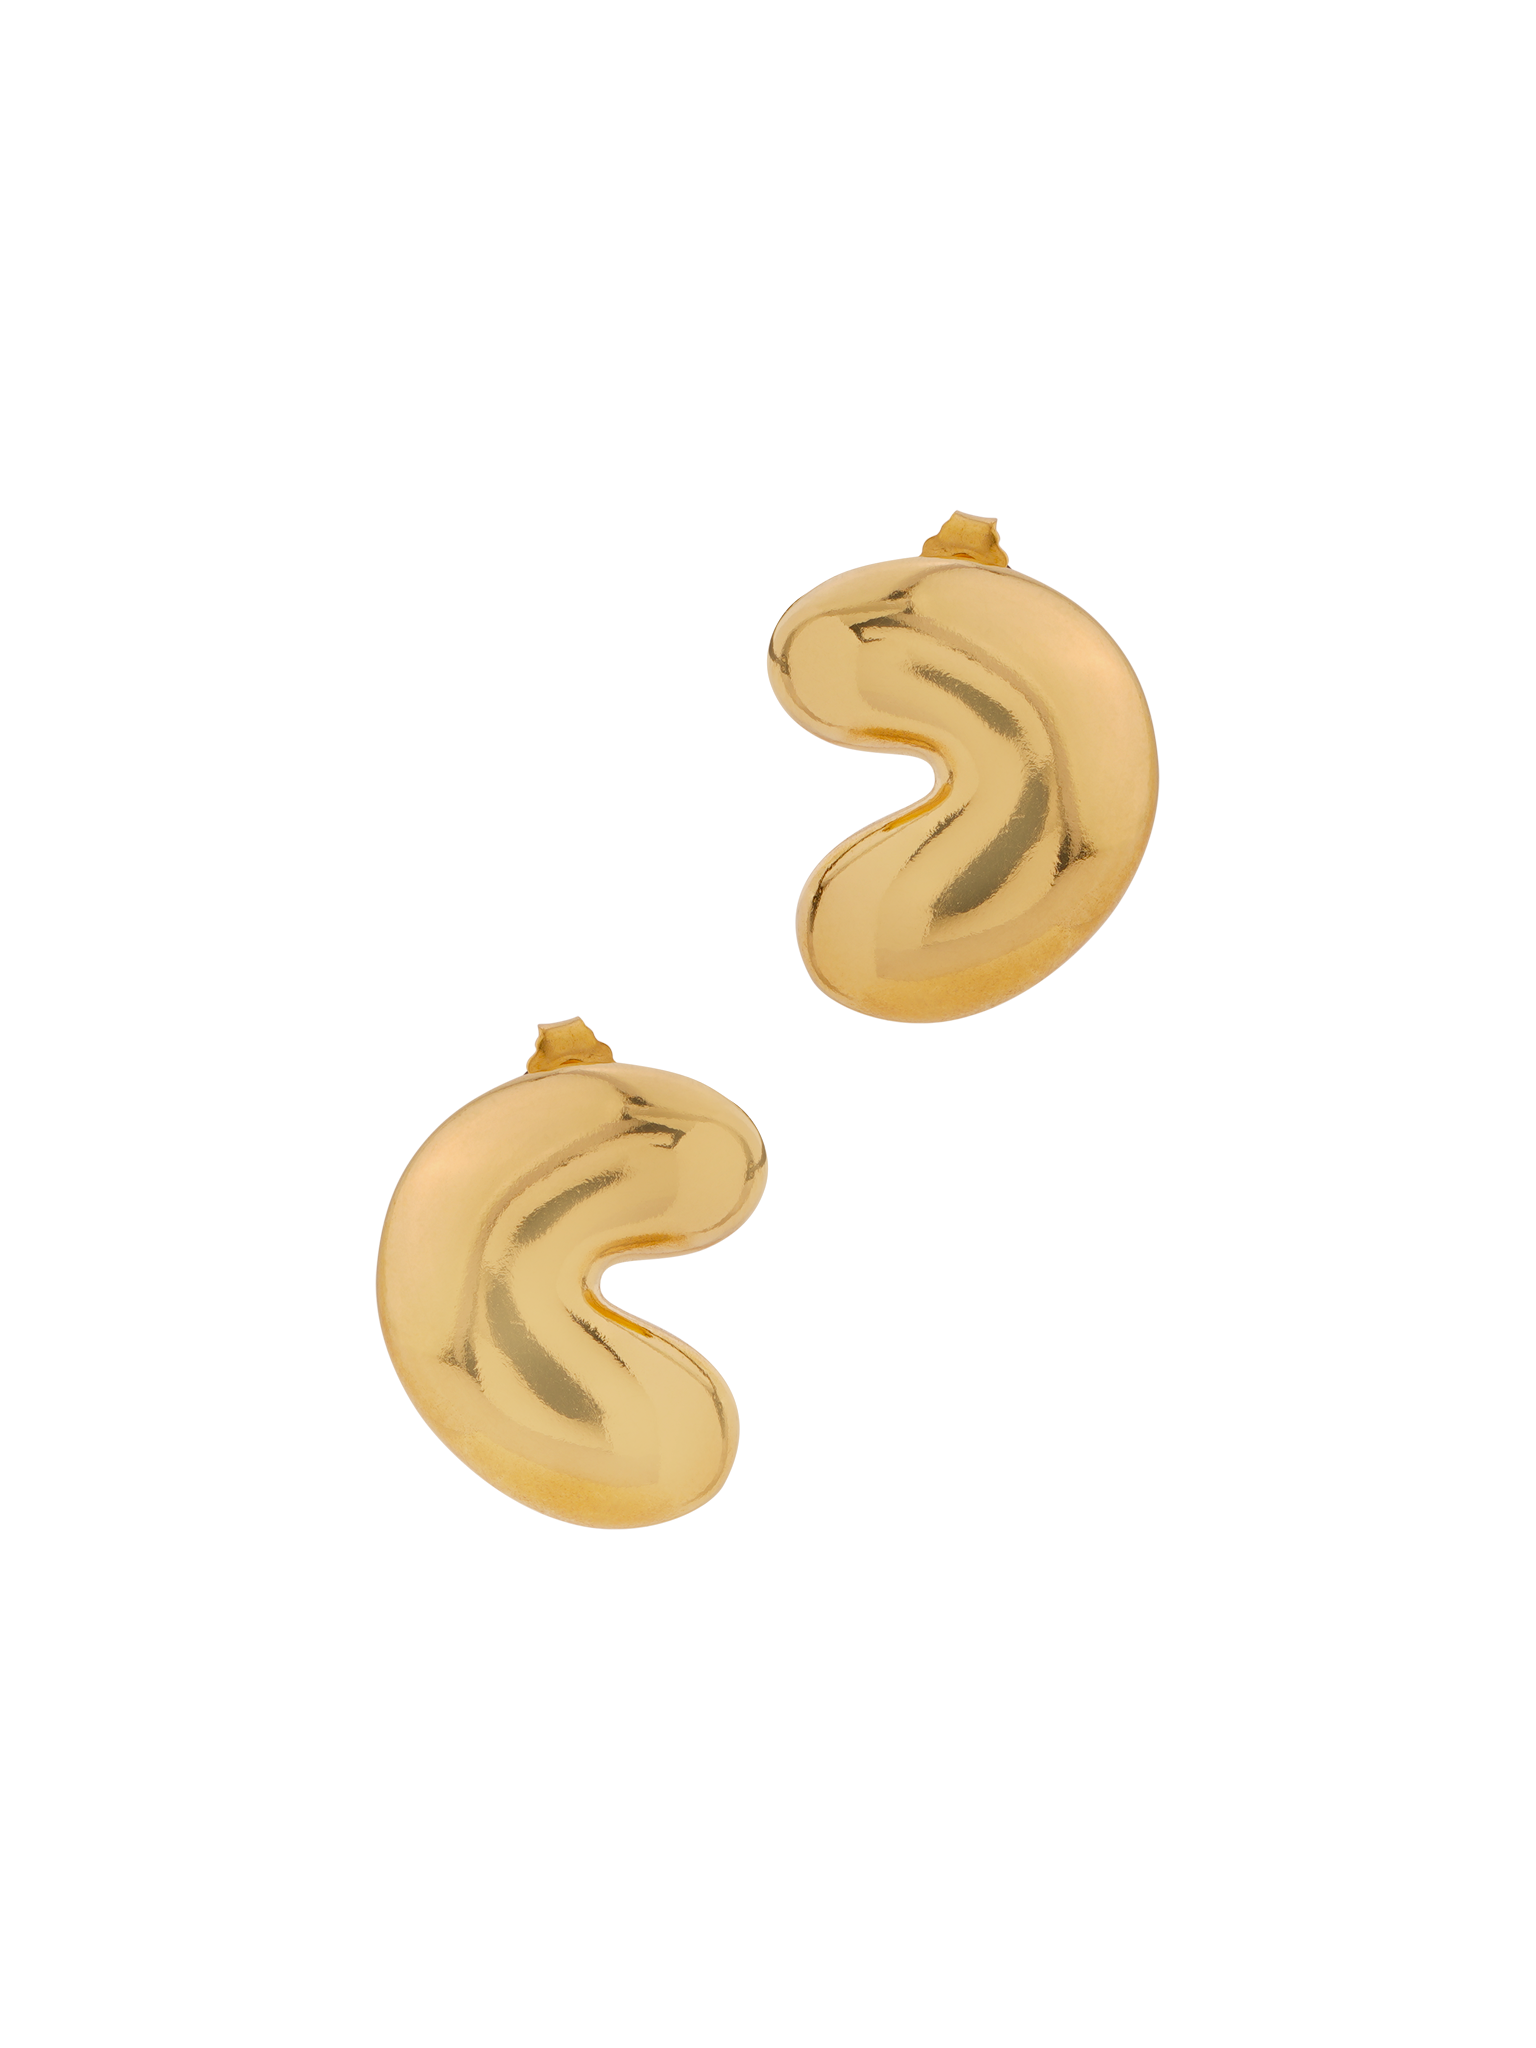 Hilma earrings gold